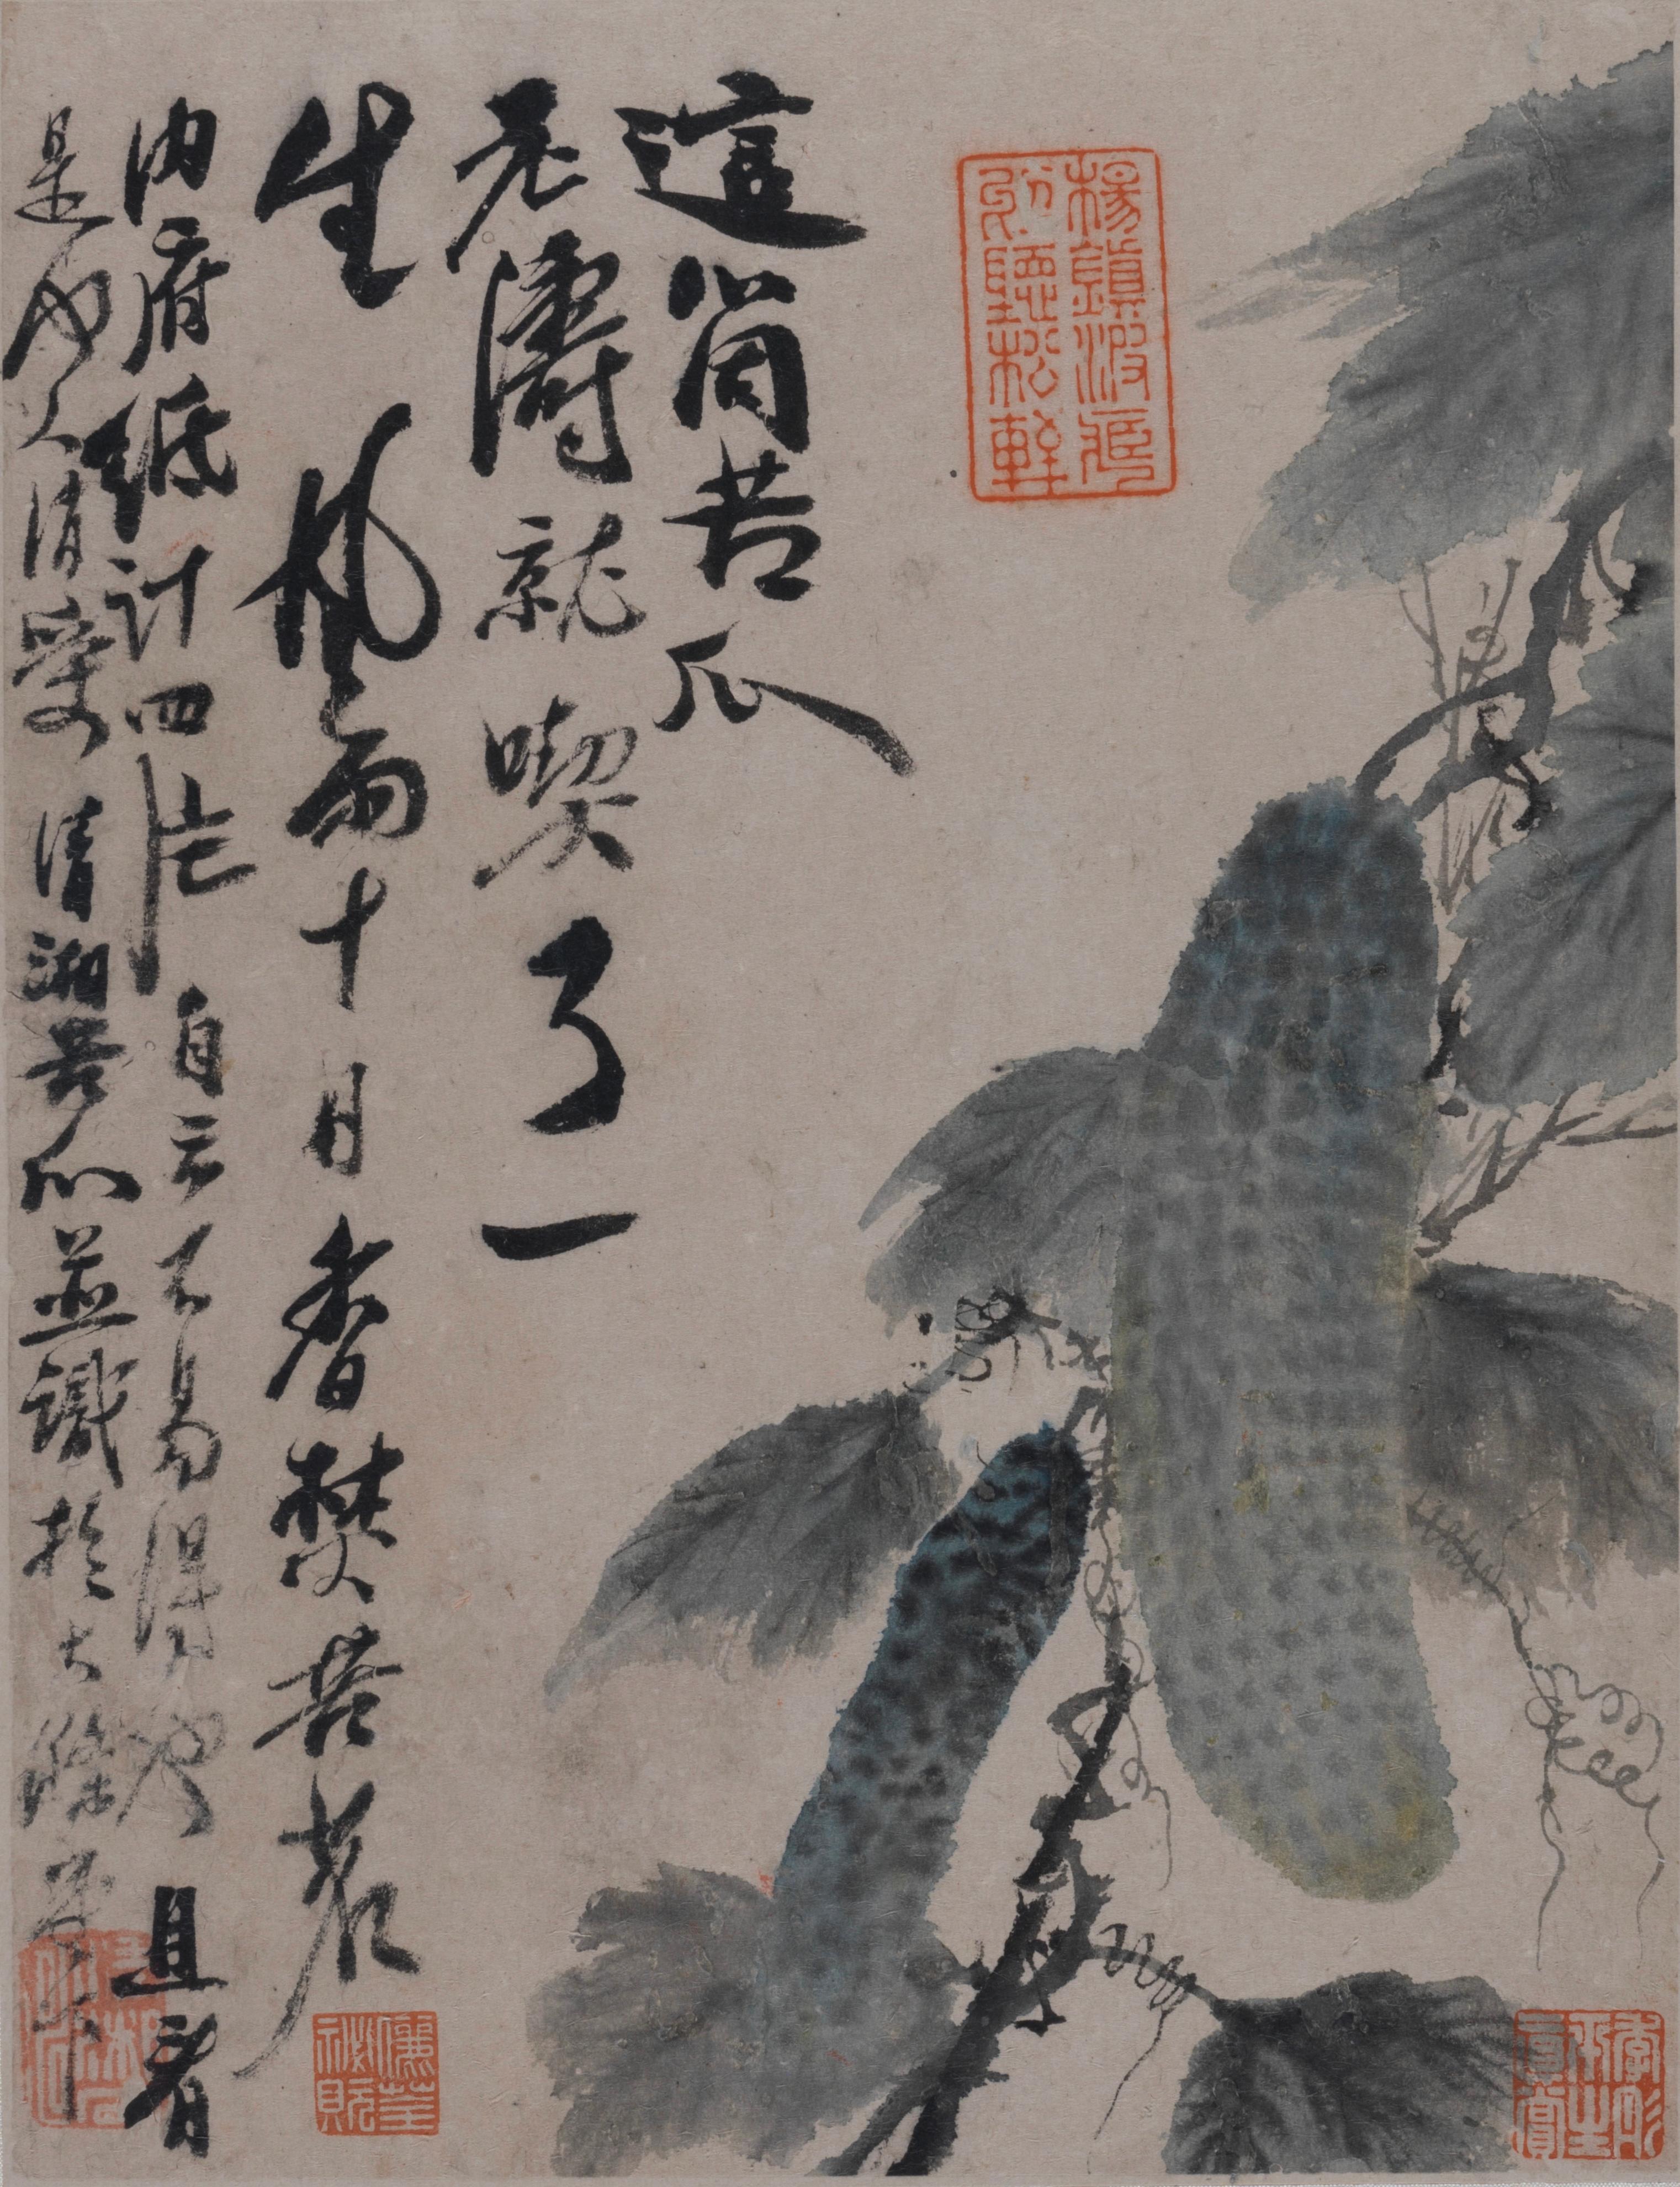 香港艺术馆举办展览「另眼相看──中国书画的装裱与保护」，透过艺术与科学的角度，分析和拆解中国书画，让市民窥探博物馆幕后的修复和保护工作。展览今日（三月二十二日）起在香港艺术馆展出。图示石涛（1642－1707）的《蔬果册》（四开册之一）。